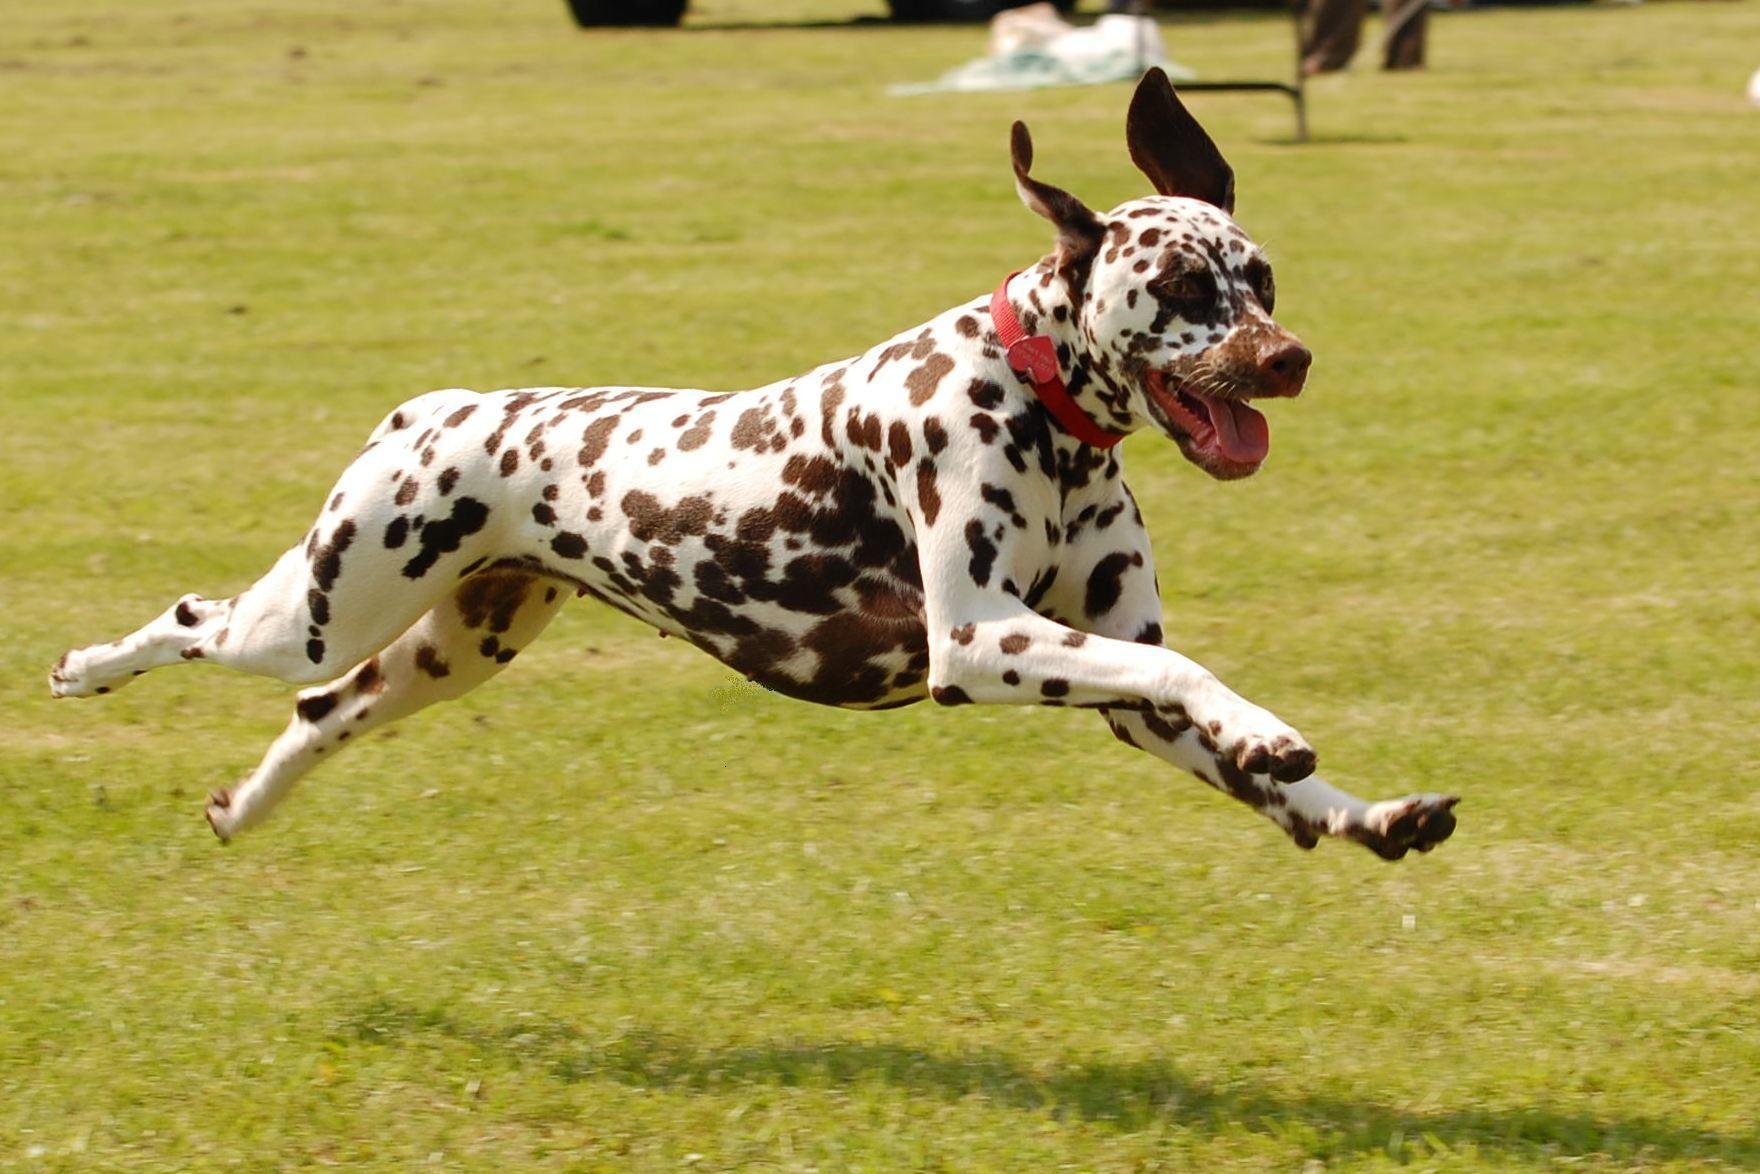 Egy kiadós futás és játék segít lefárasztani a kutyát